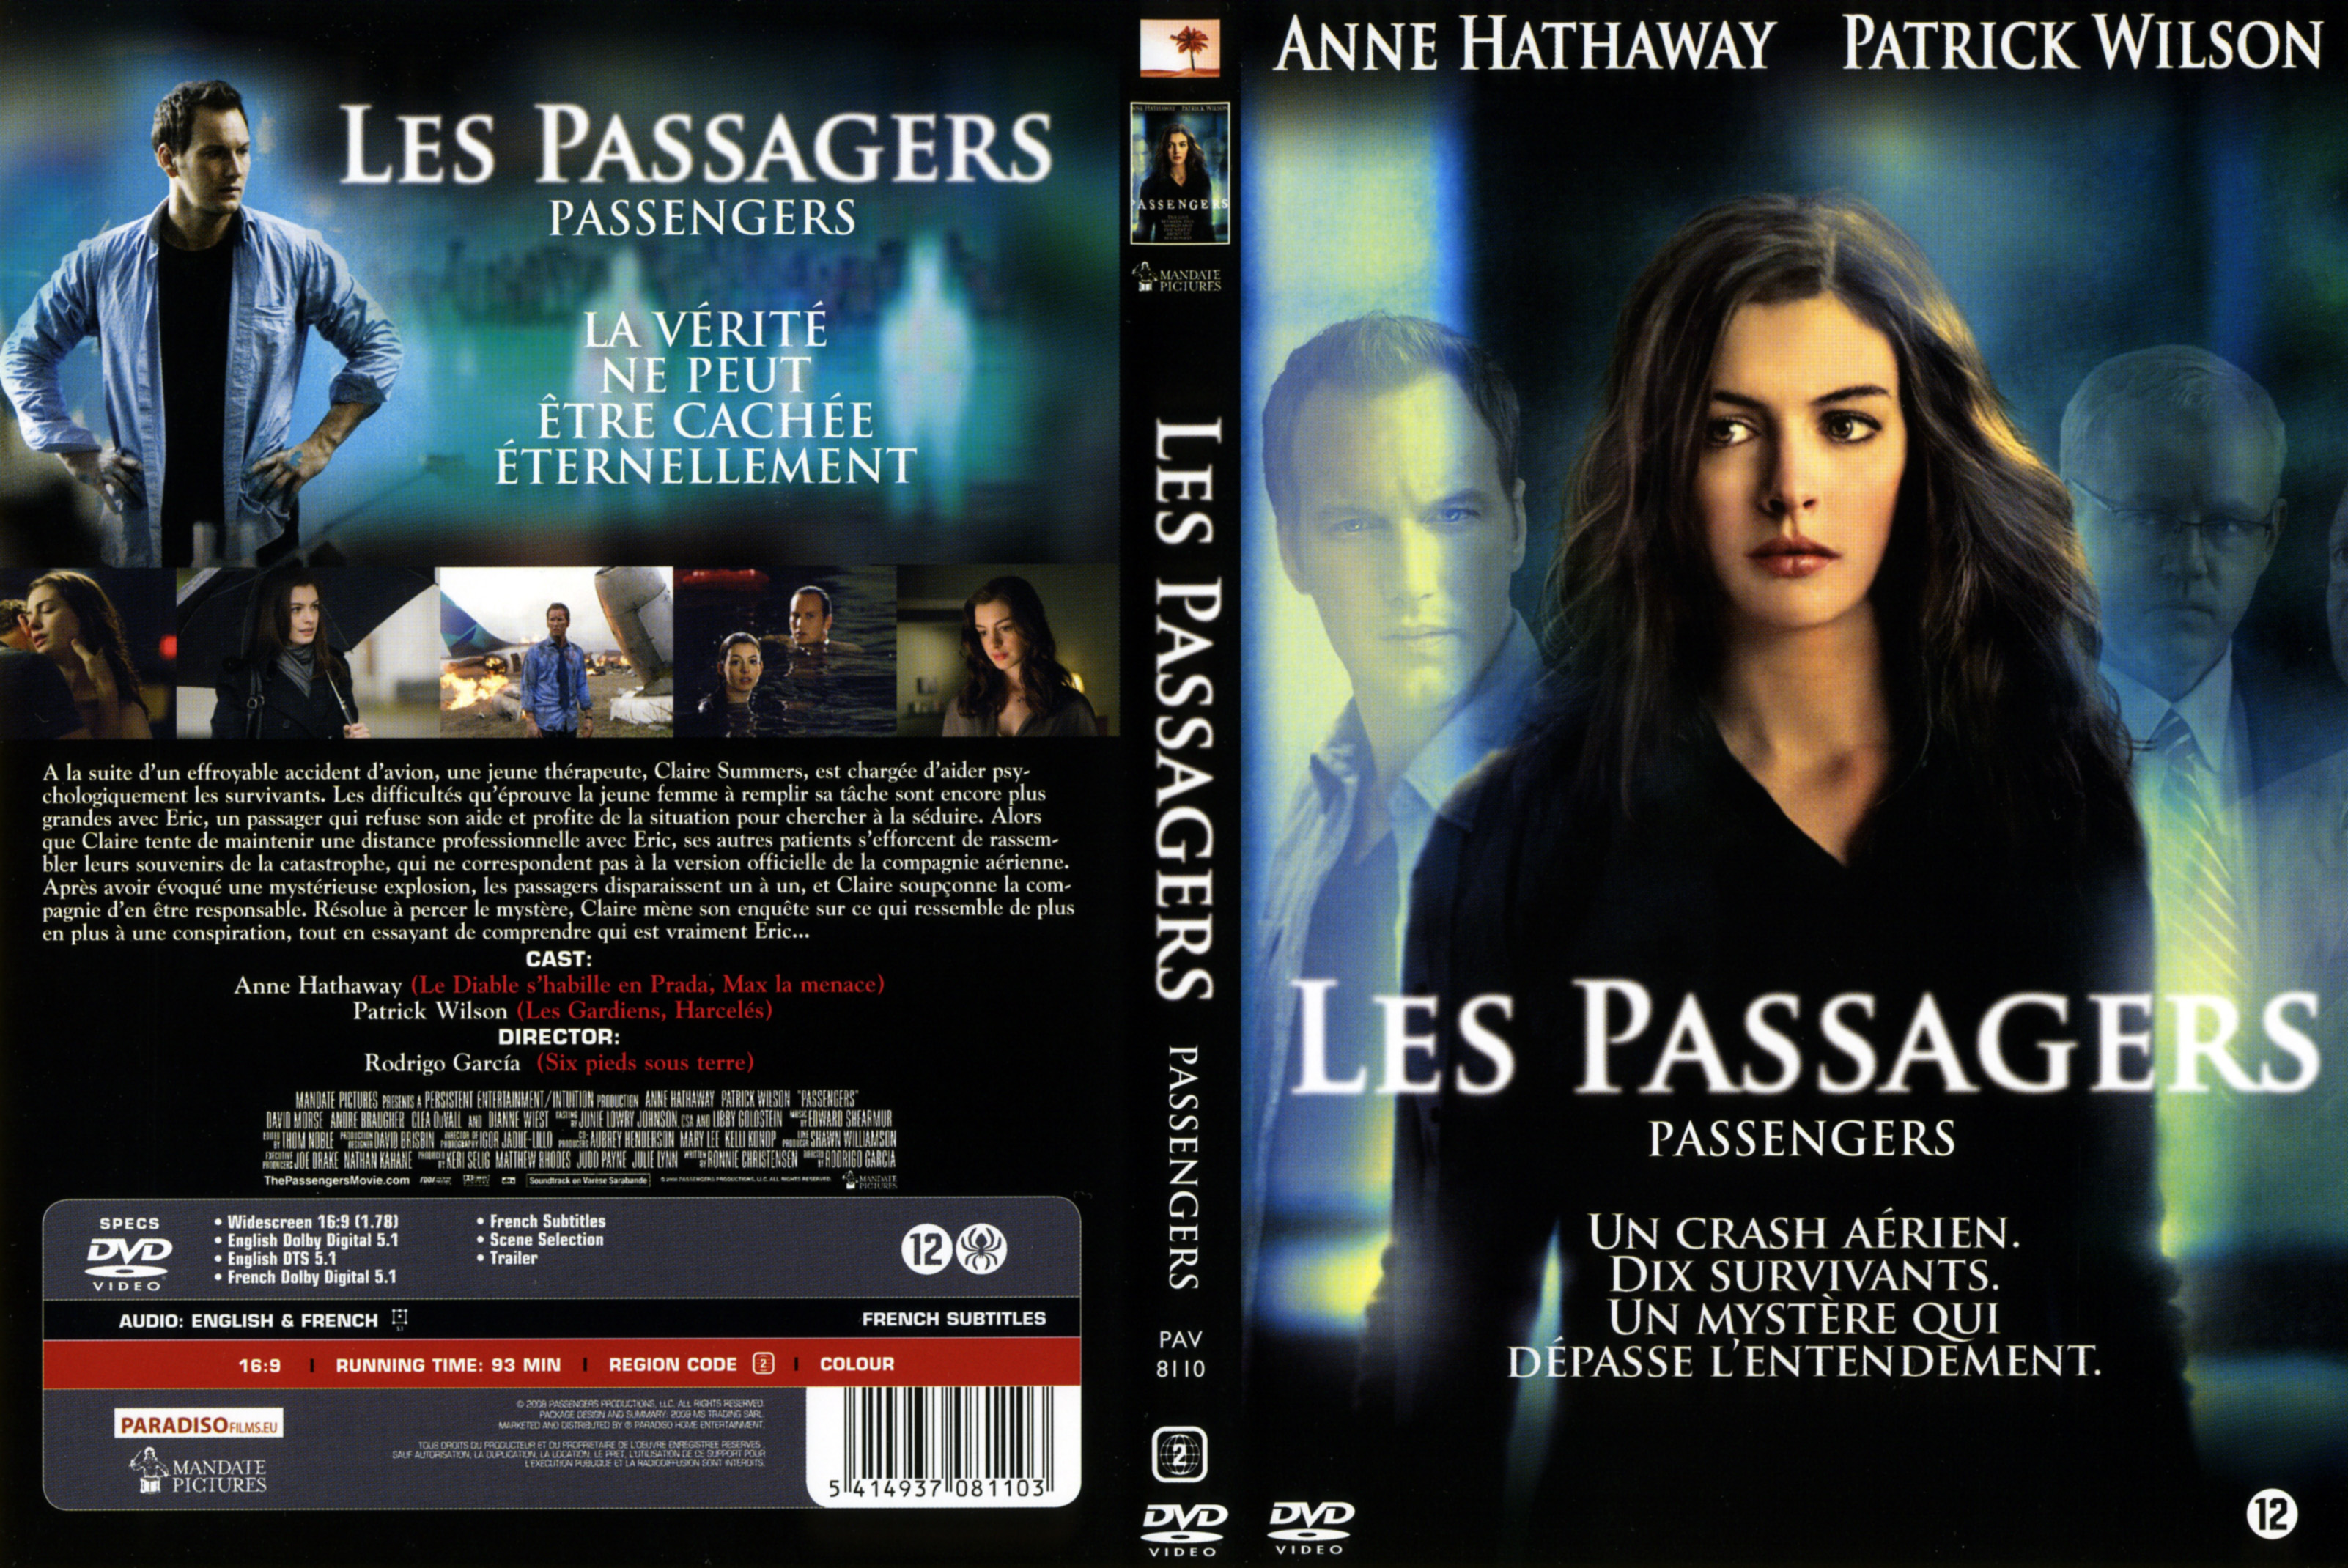 Jaquette DVD Les passagers v2